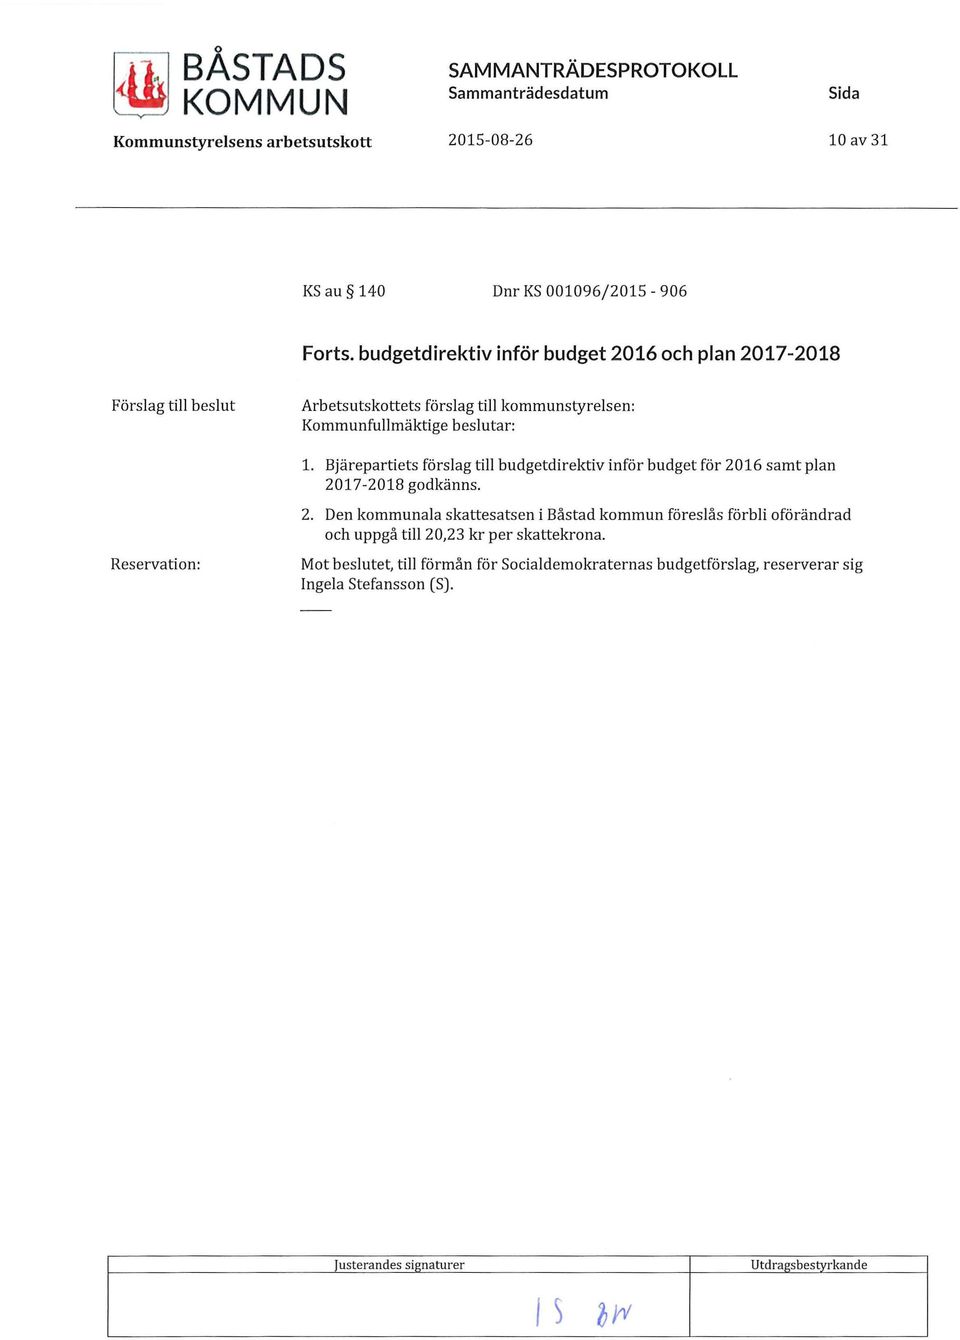 Bjärepartiets förslag till budgetdirektiv inför budget för 2016 samt plan 2017-2018 godkänns. Reservation: 2.